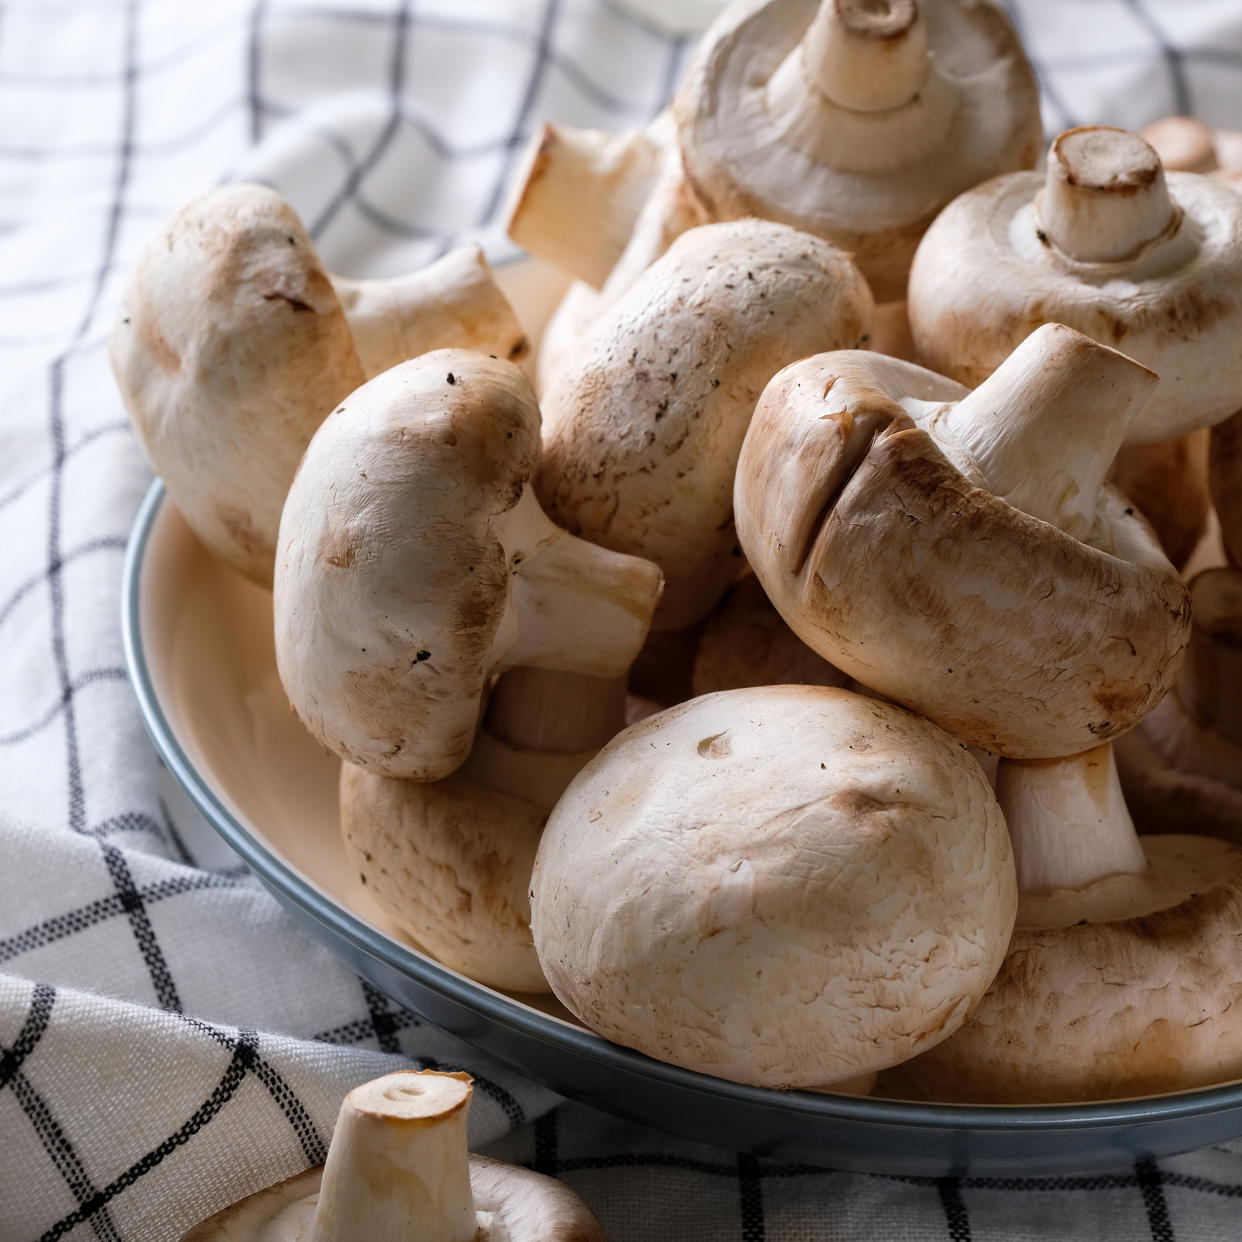  Bowl of mushrooms on tea towel 